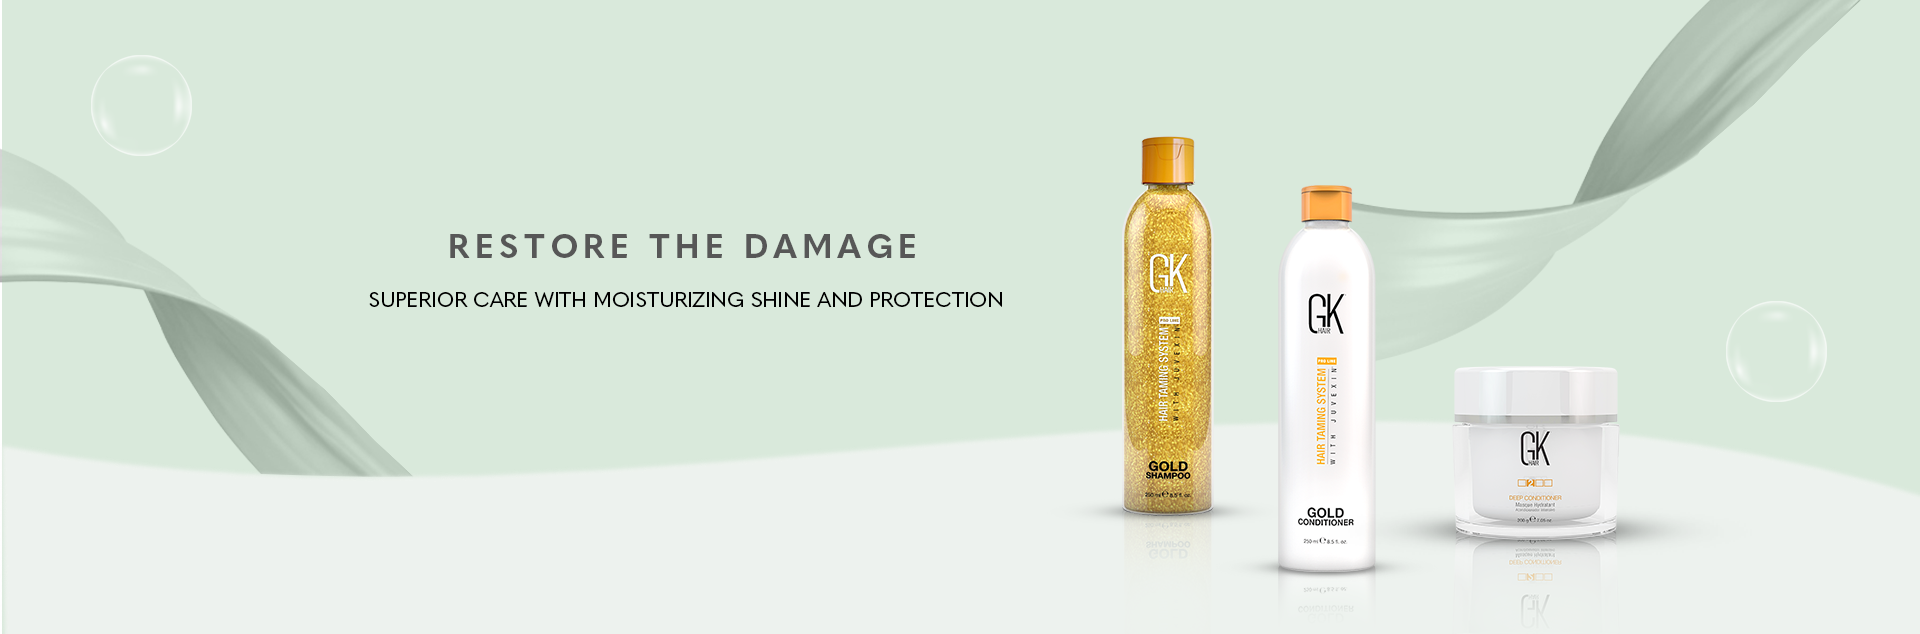 GK Extreme Damage Shampoo Conditioner